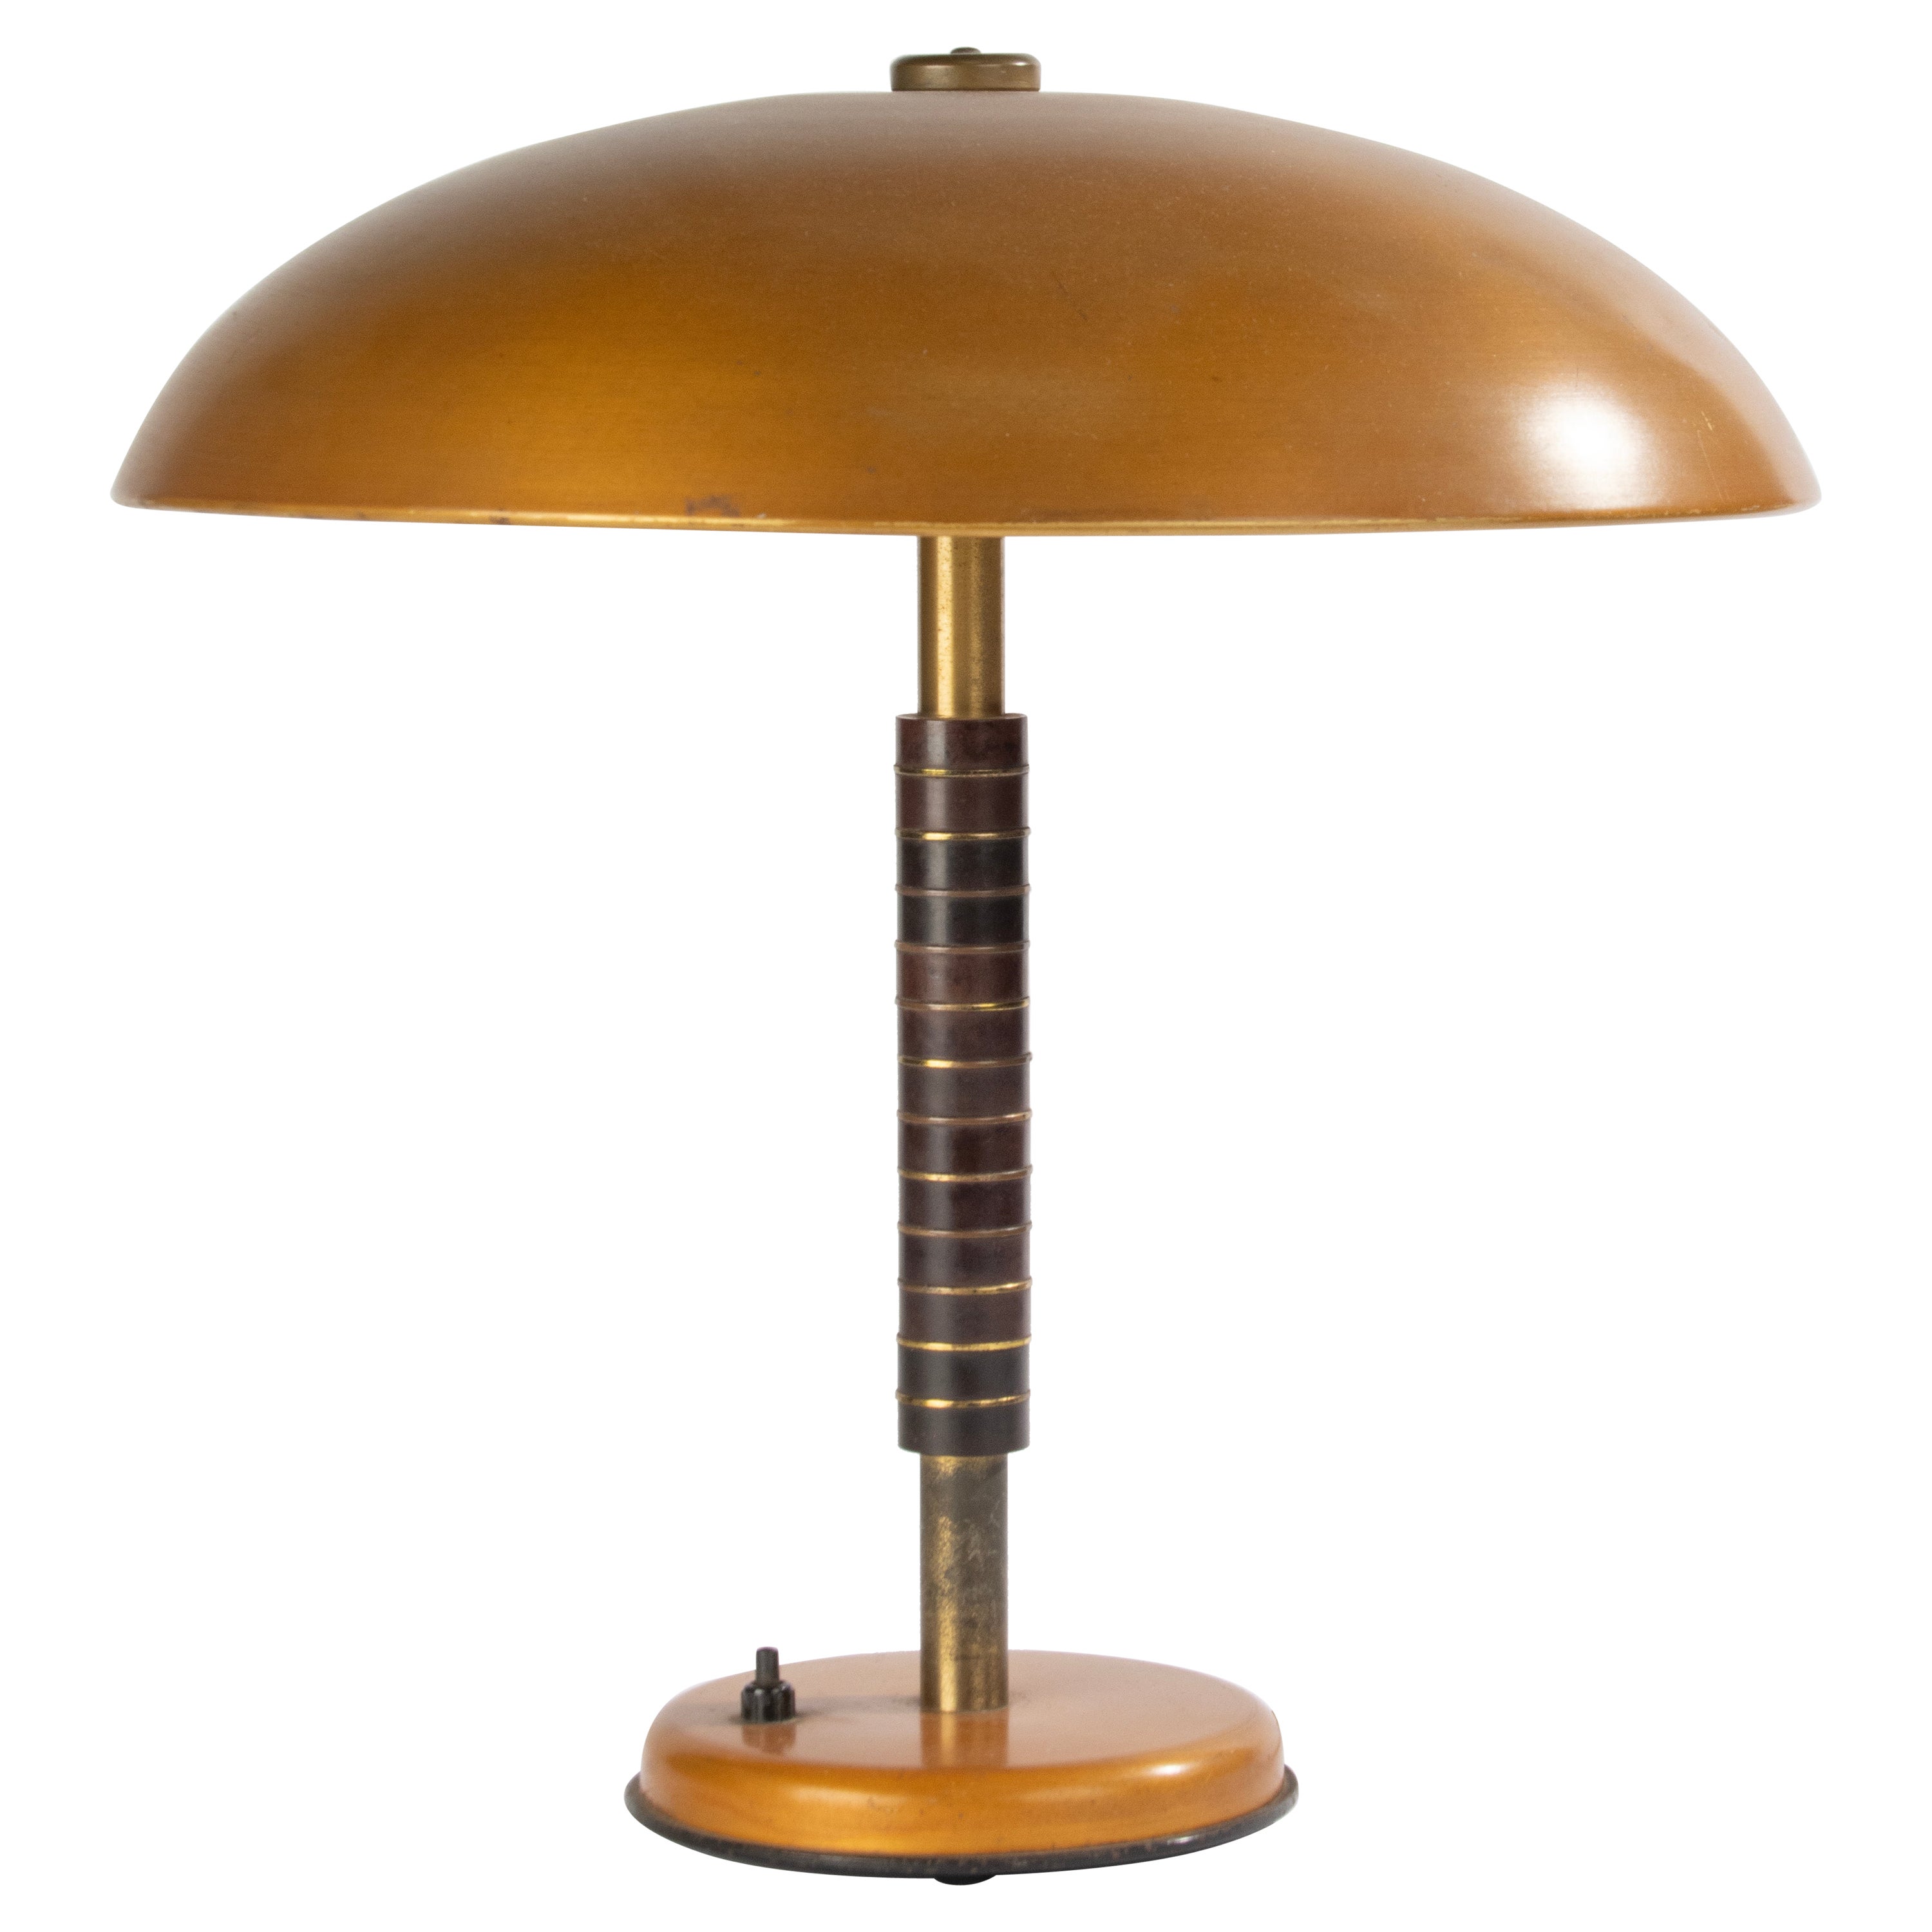 Bauhaus-Tischlampe im Vintage-Stil - 1940er Jahre - Bakelit und Metall 